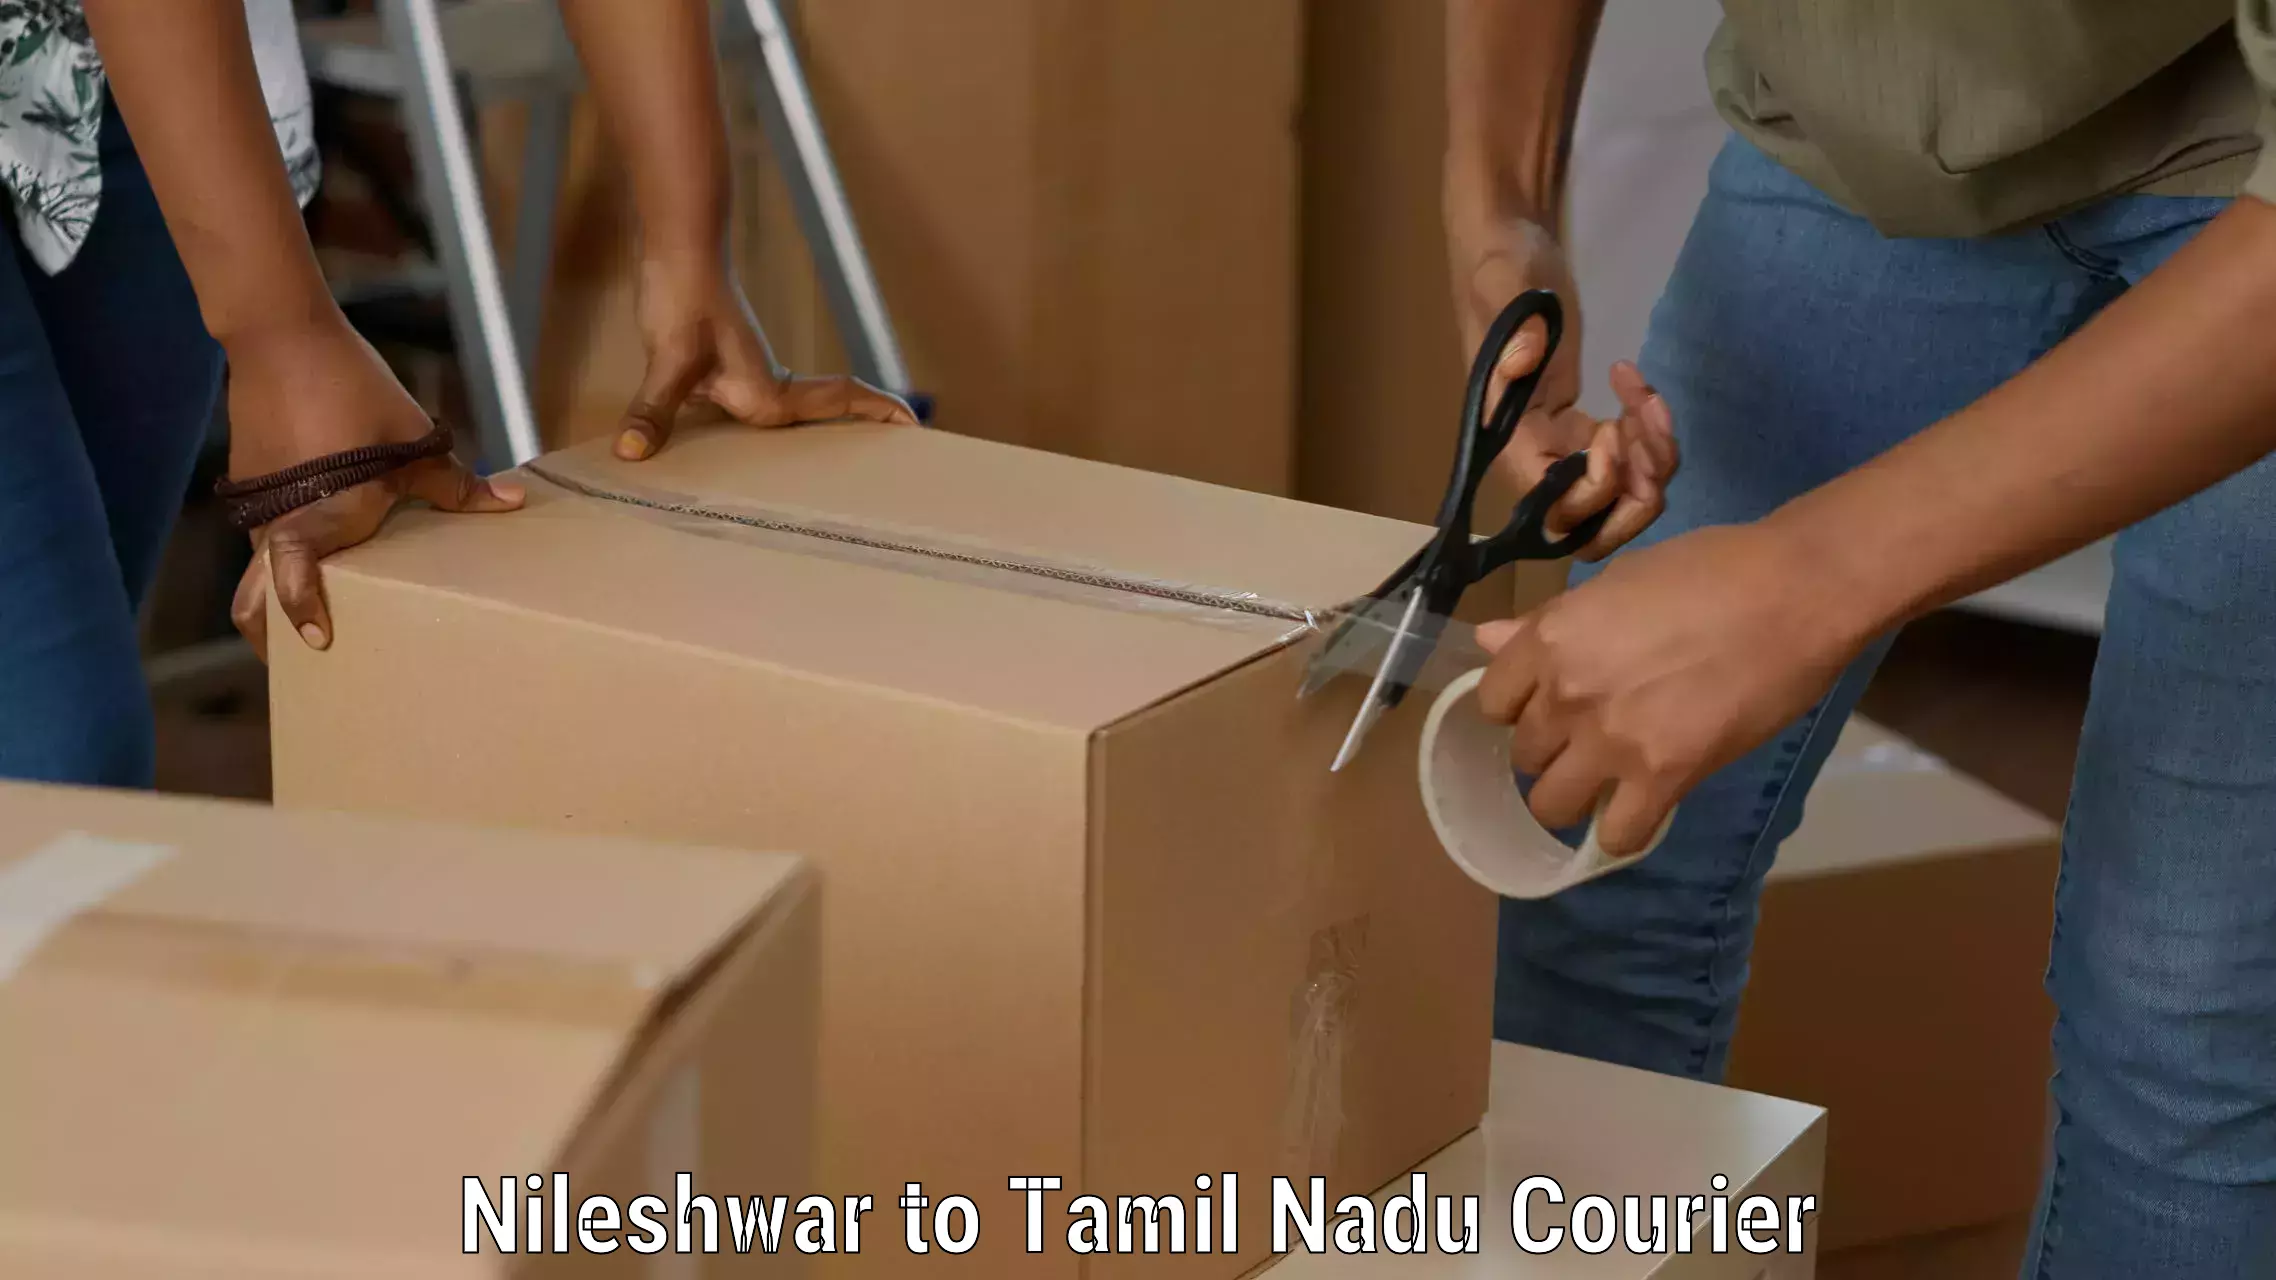 Customized shipping options Nileshwar to Tindivanam